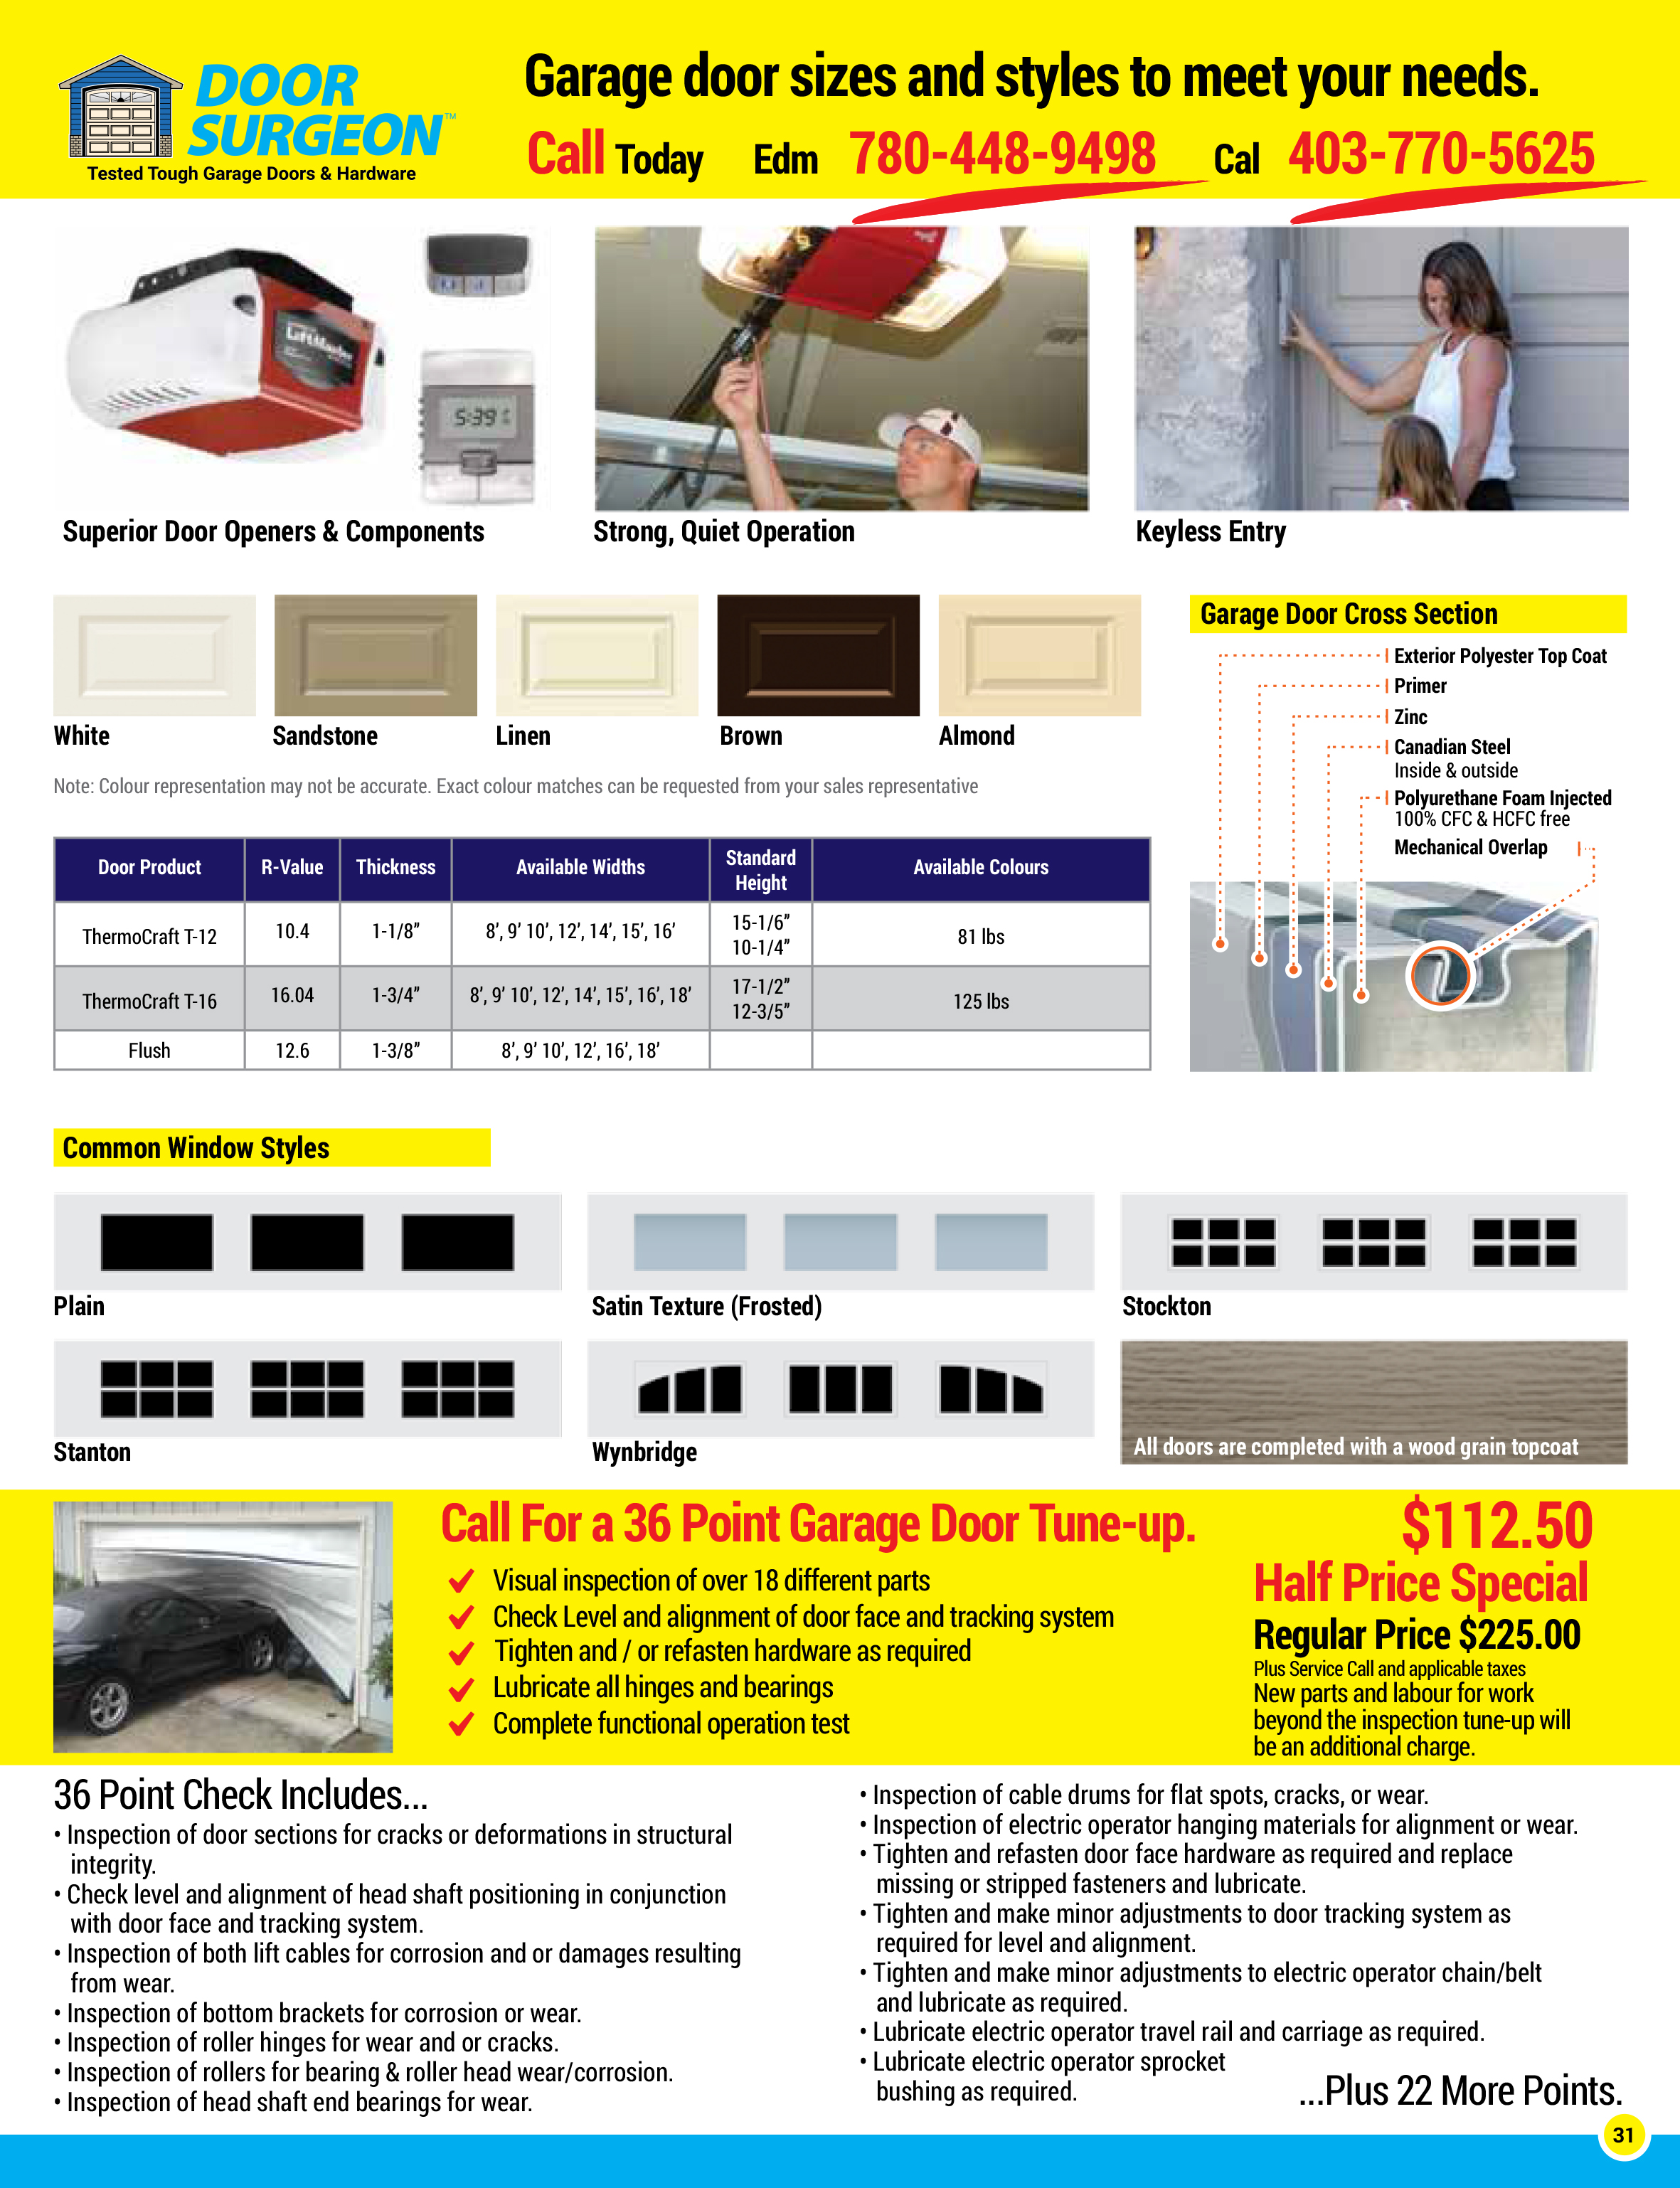 Door Surgeon supply & install quality garage door openers components & even keyless entry units.